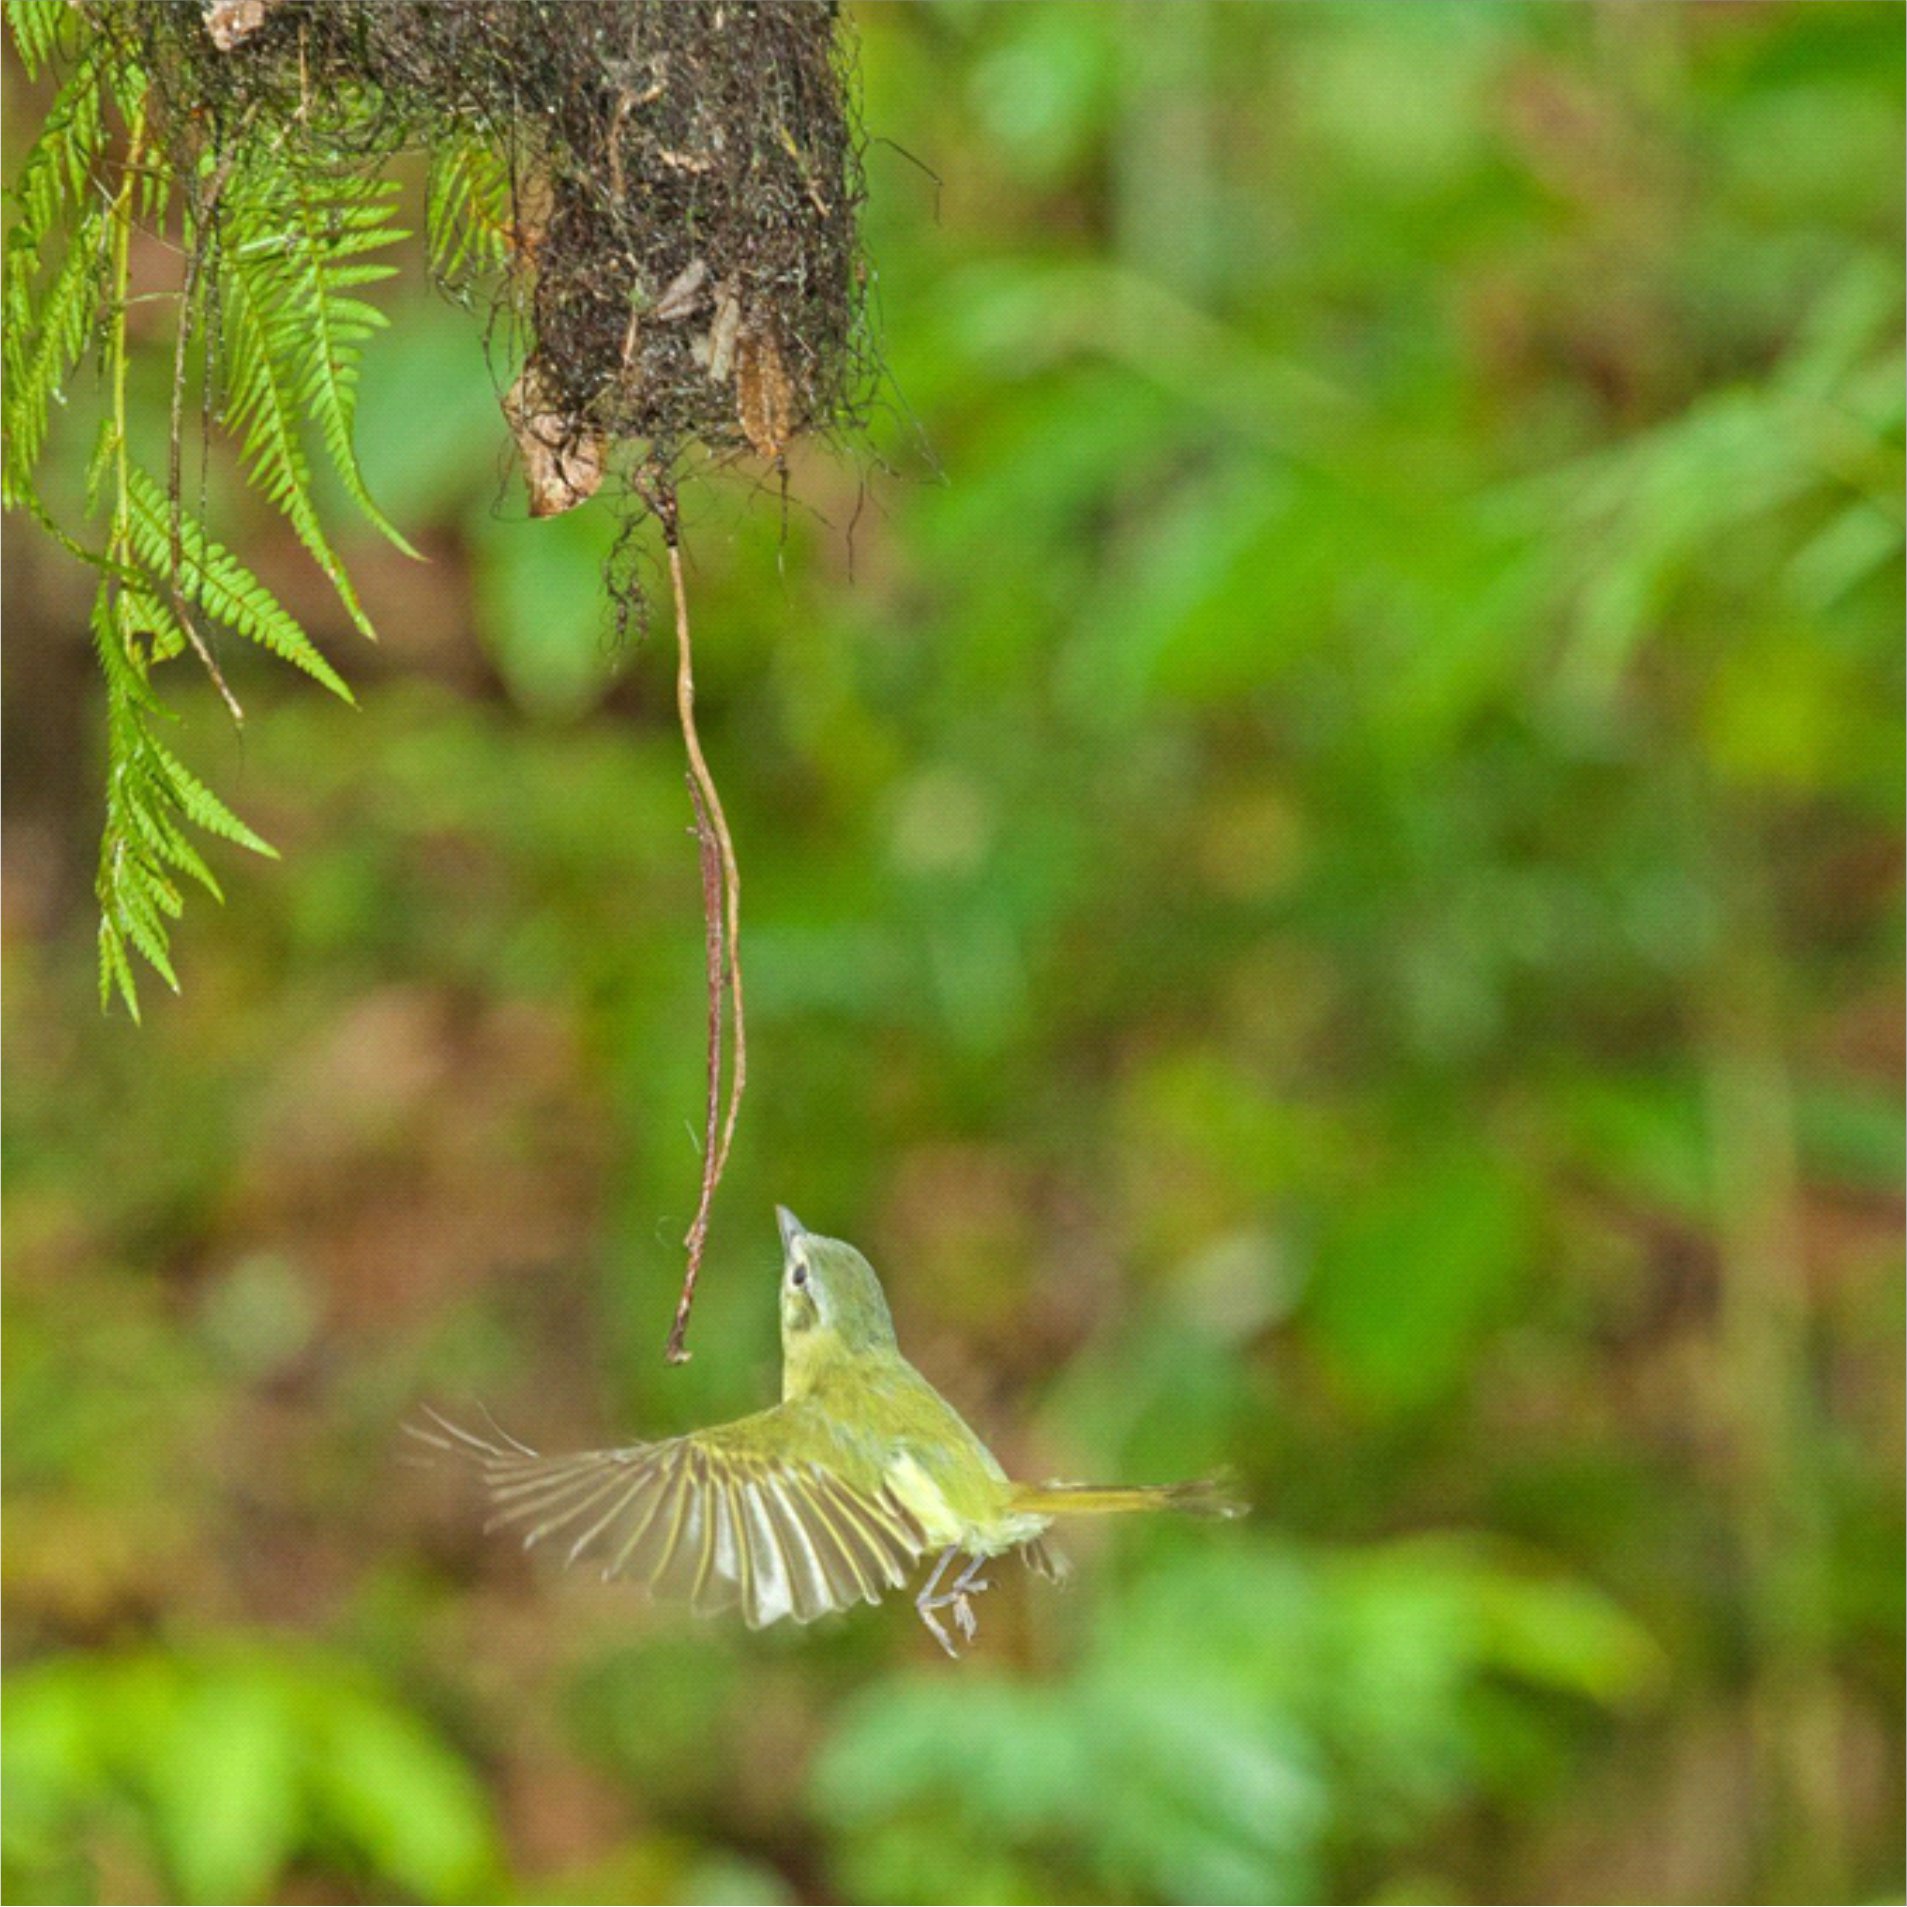 Esse é o Tolmomyias sulphurescens ave que nidifica preferencialmente acima de corpos hídricos, cujo ninho tem a entrada na parte inferior, entrando no seu ninho. | Autor: Ederson José de Godoy